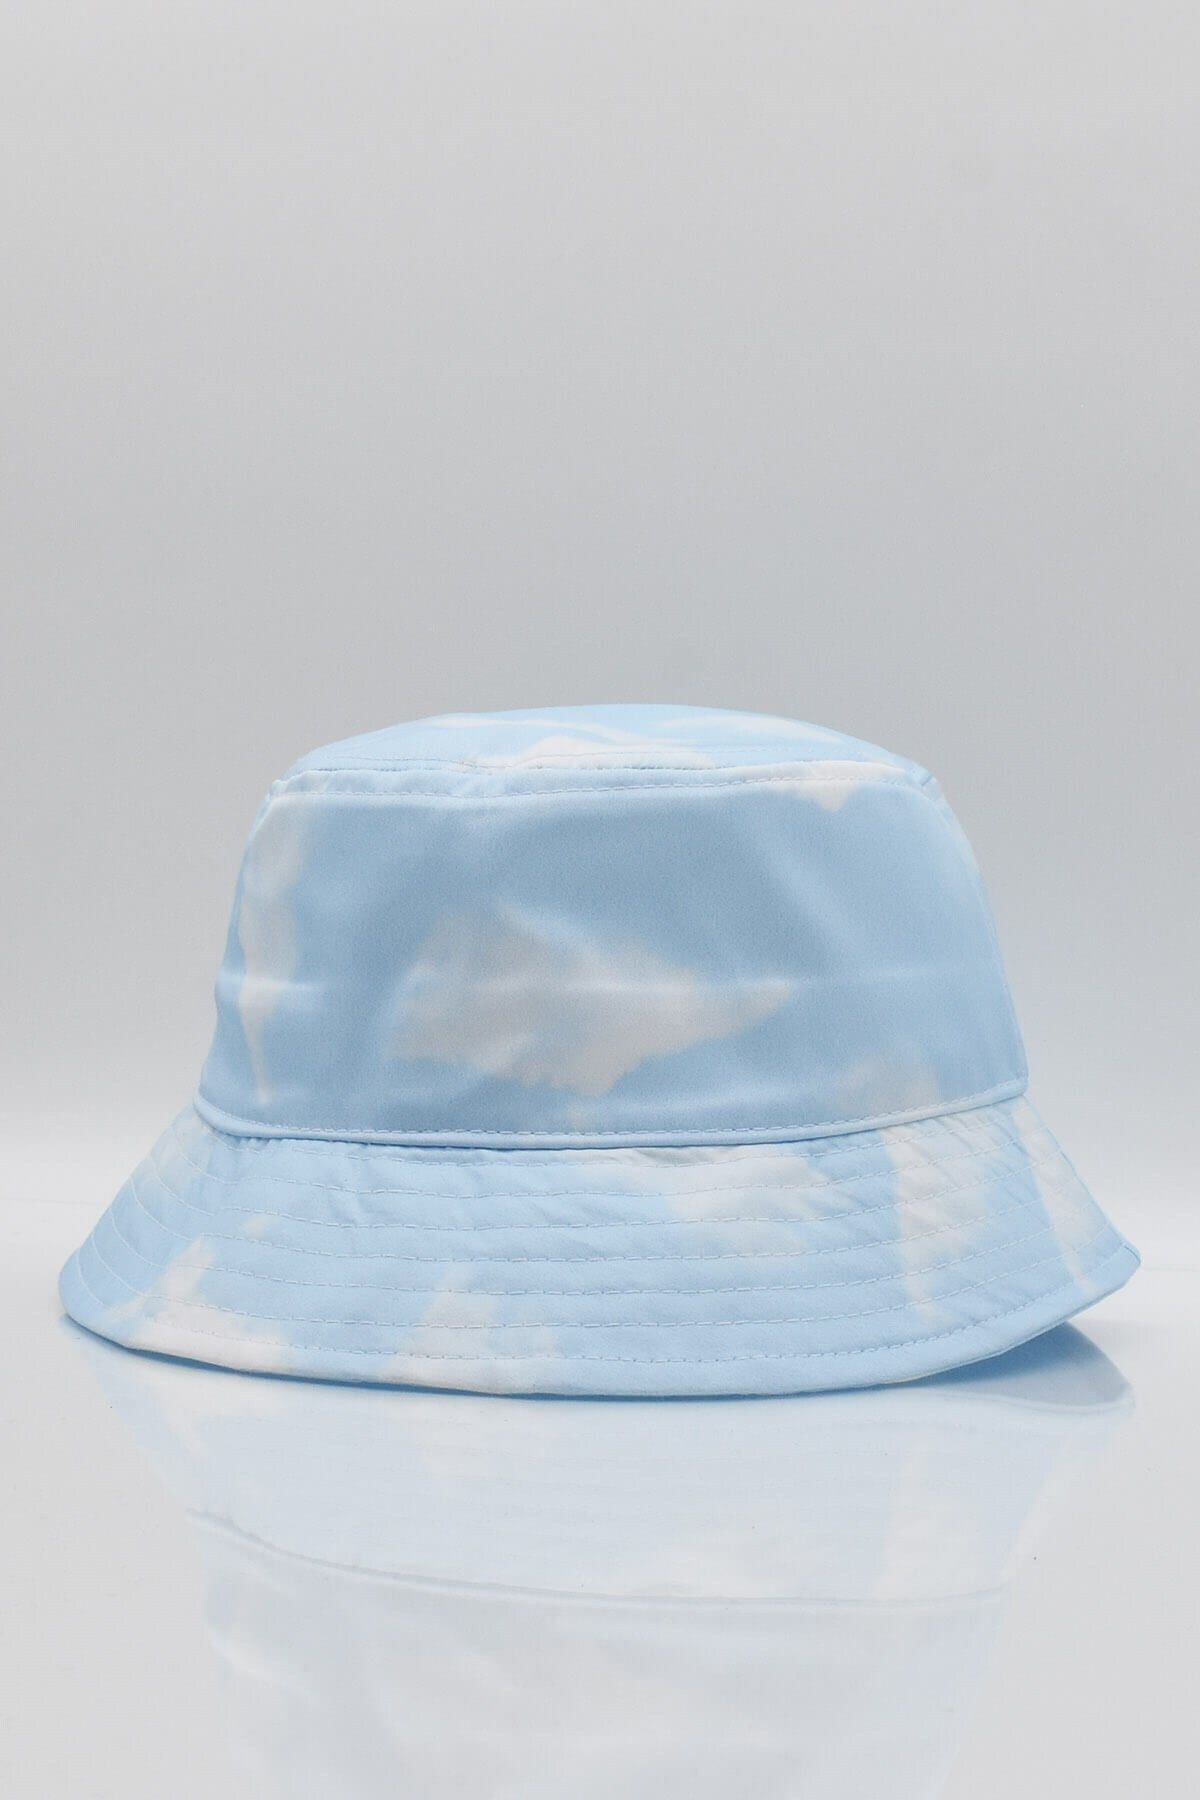 Külah Bulut Desenli Balıkçı Şapka Bucket Hat